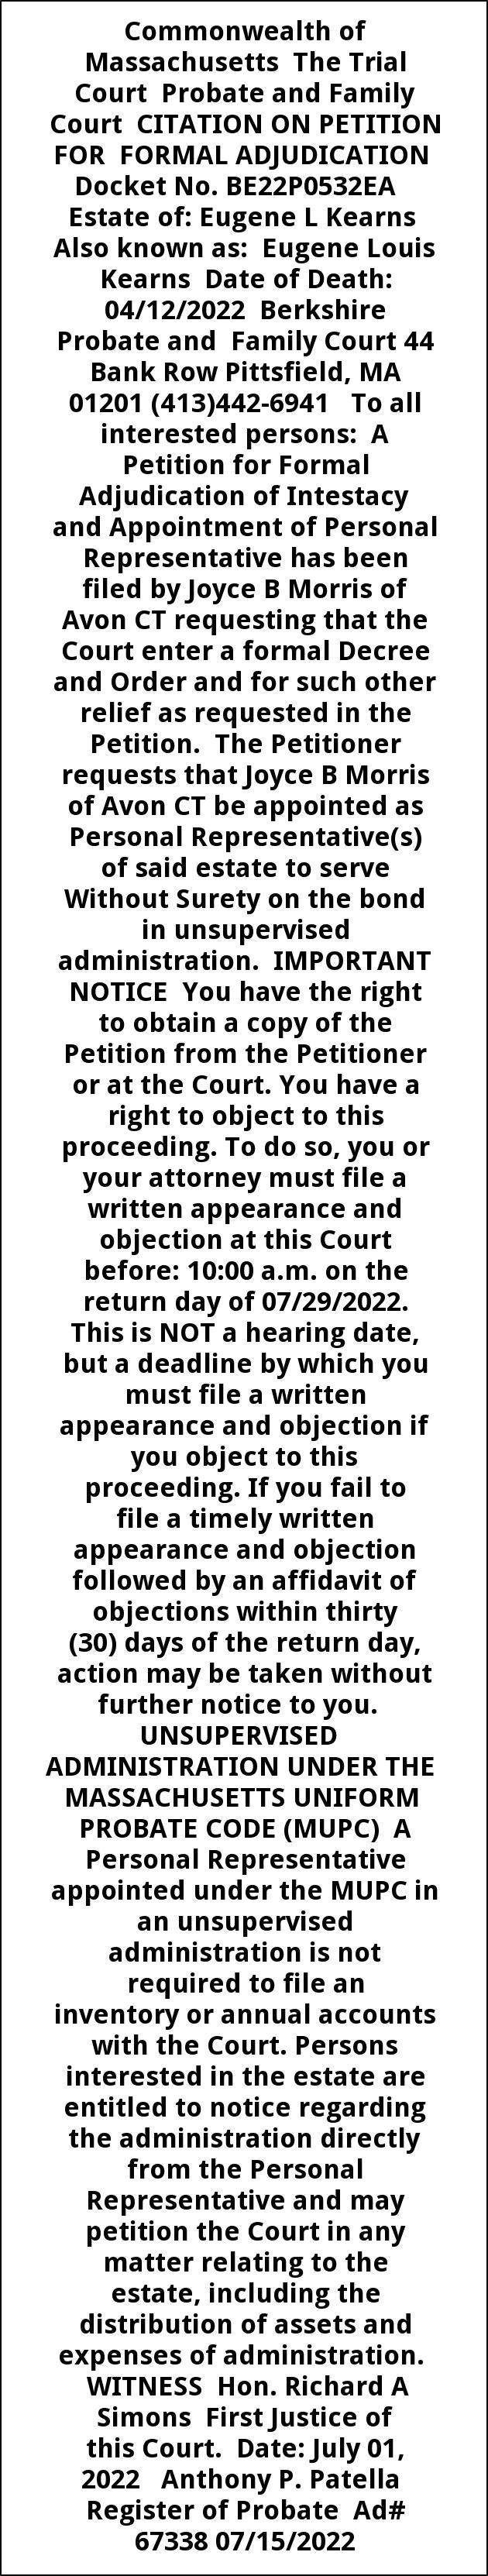 Citation On Petition For Formal Adjudication